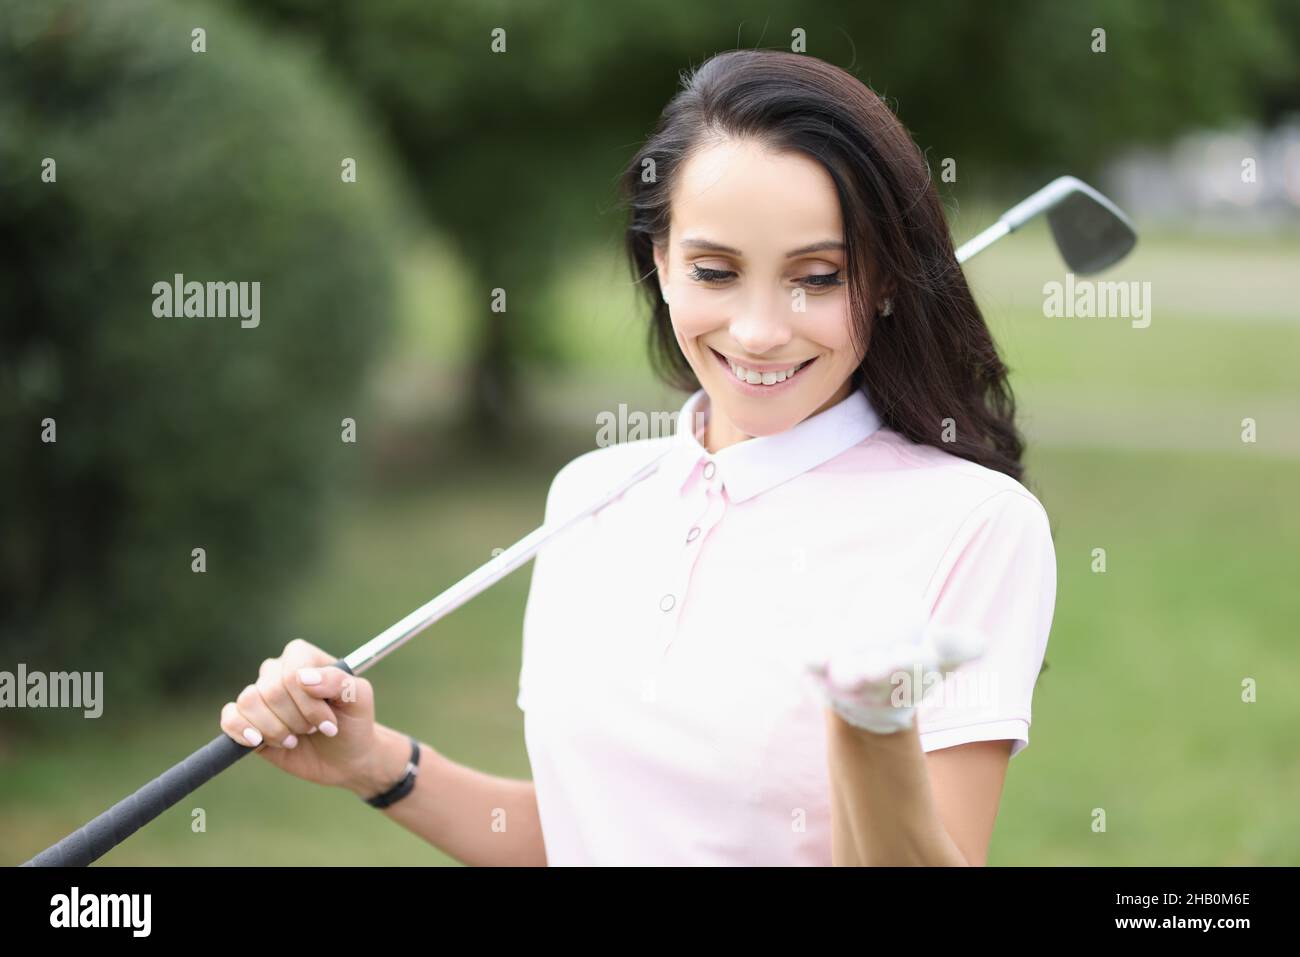 Souriante professionnelle de joueur de golf femme tenir le ballon sur la paume Banque D'Images